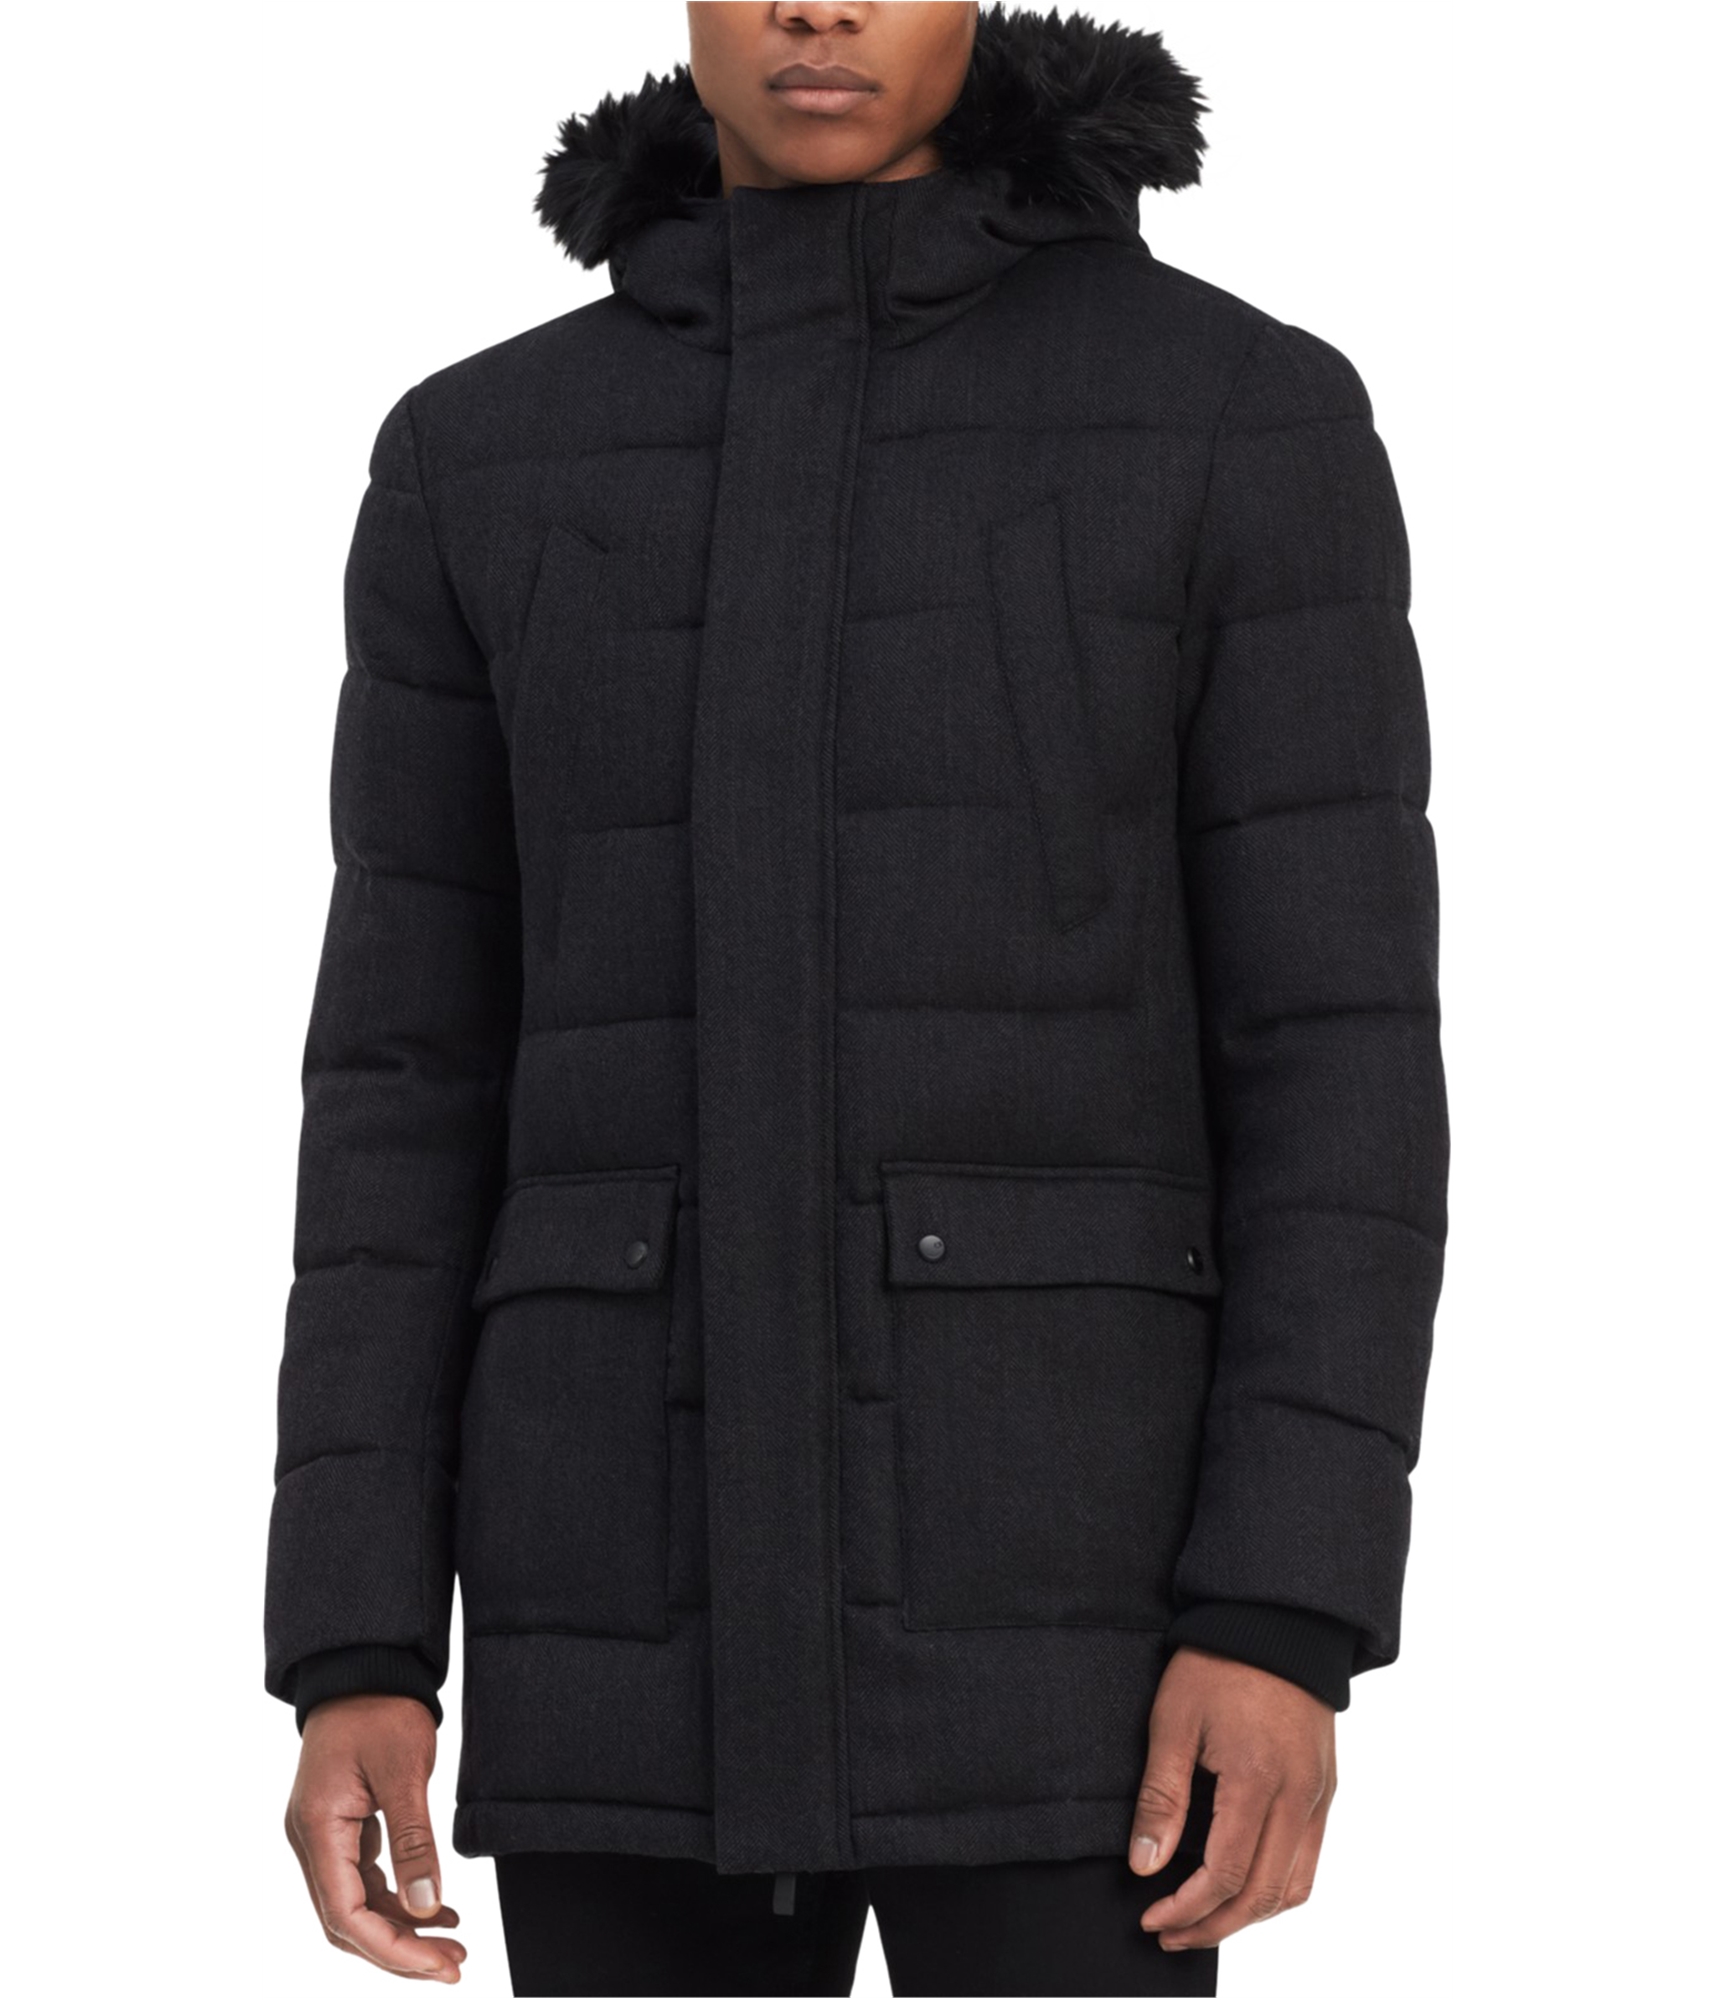 Calvin Klein Mens Hooded Jacket, Black, Medium | eBay